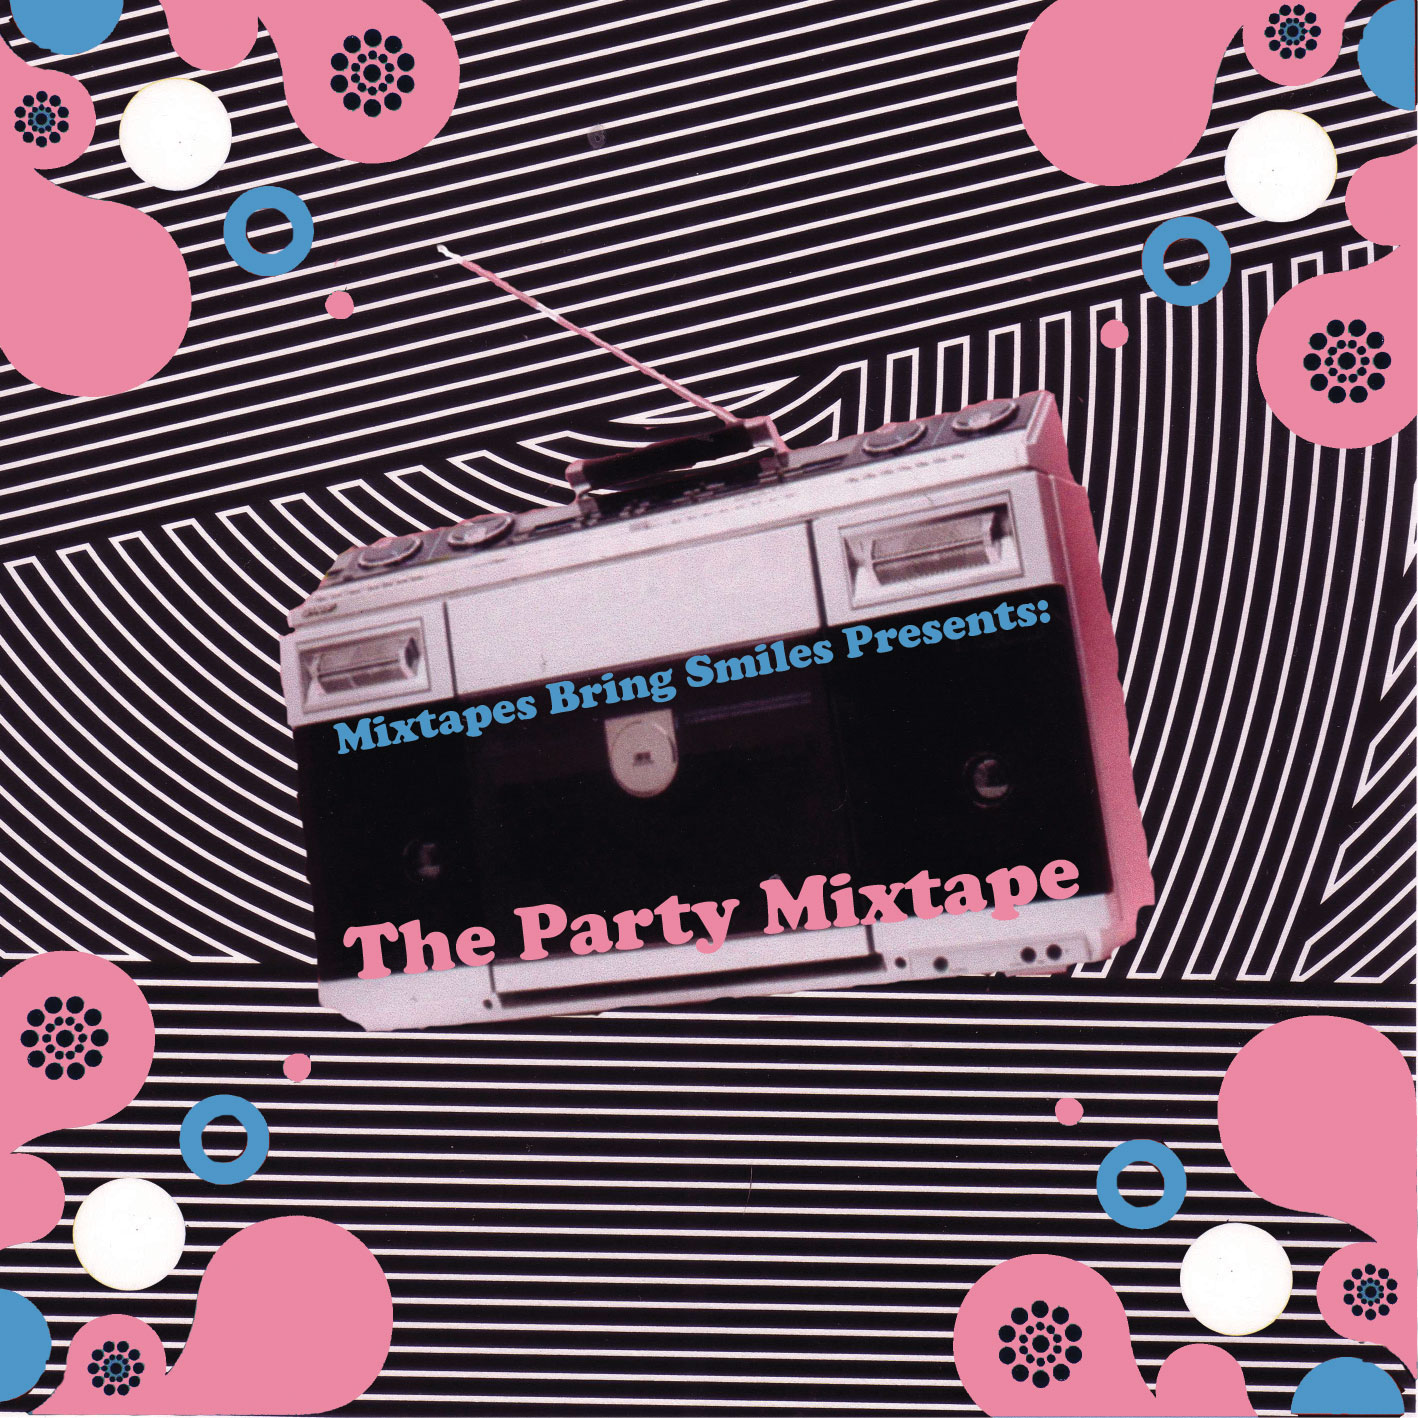 [The-Party-Mixtape-for-Steve.jpg]